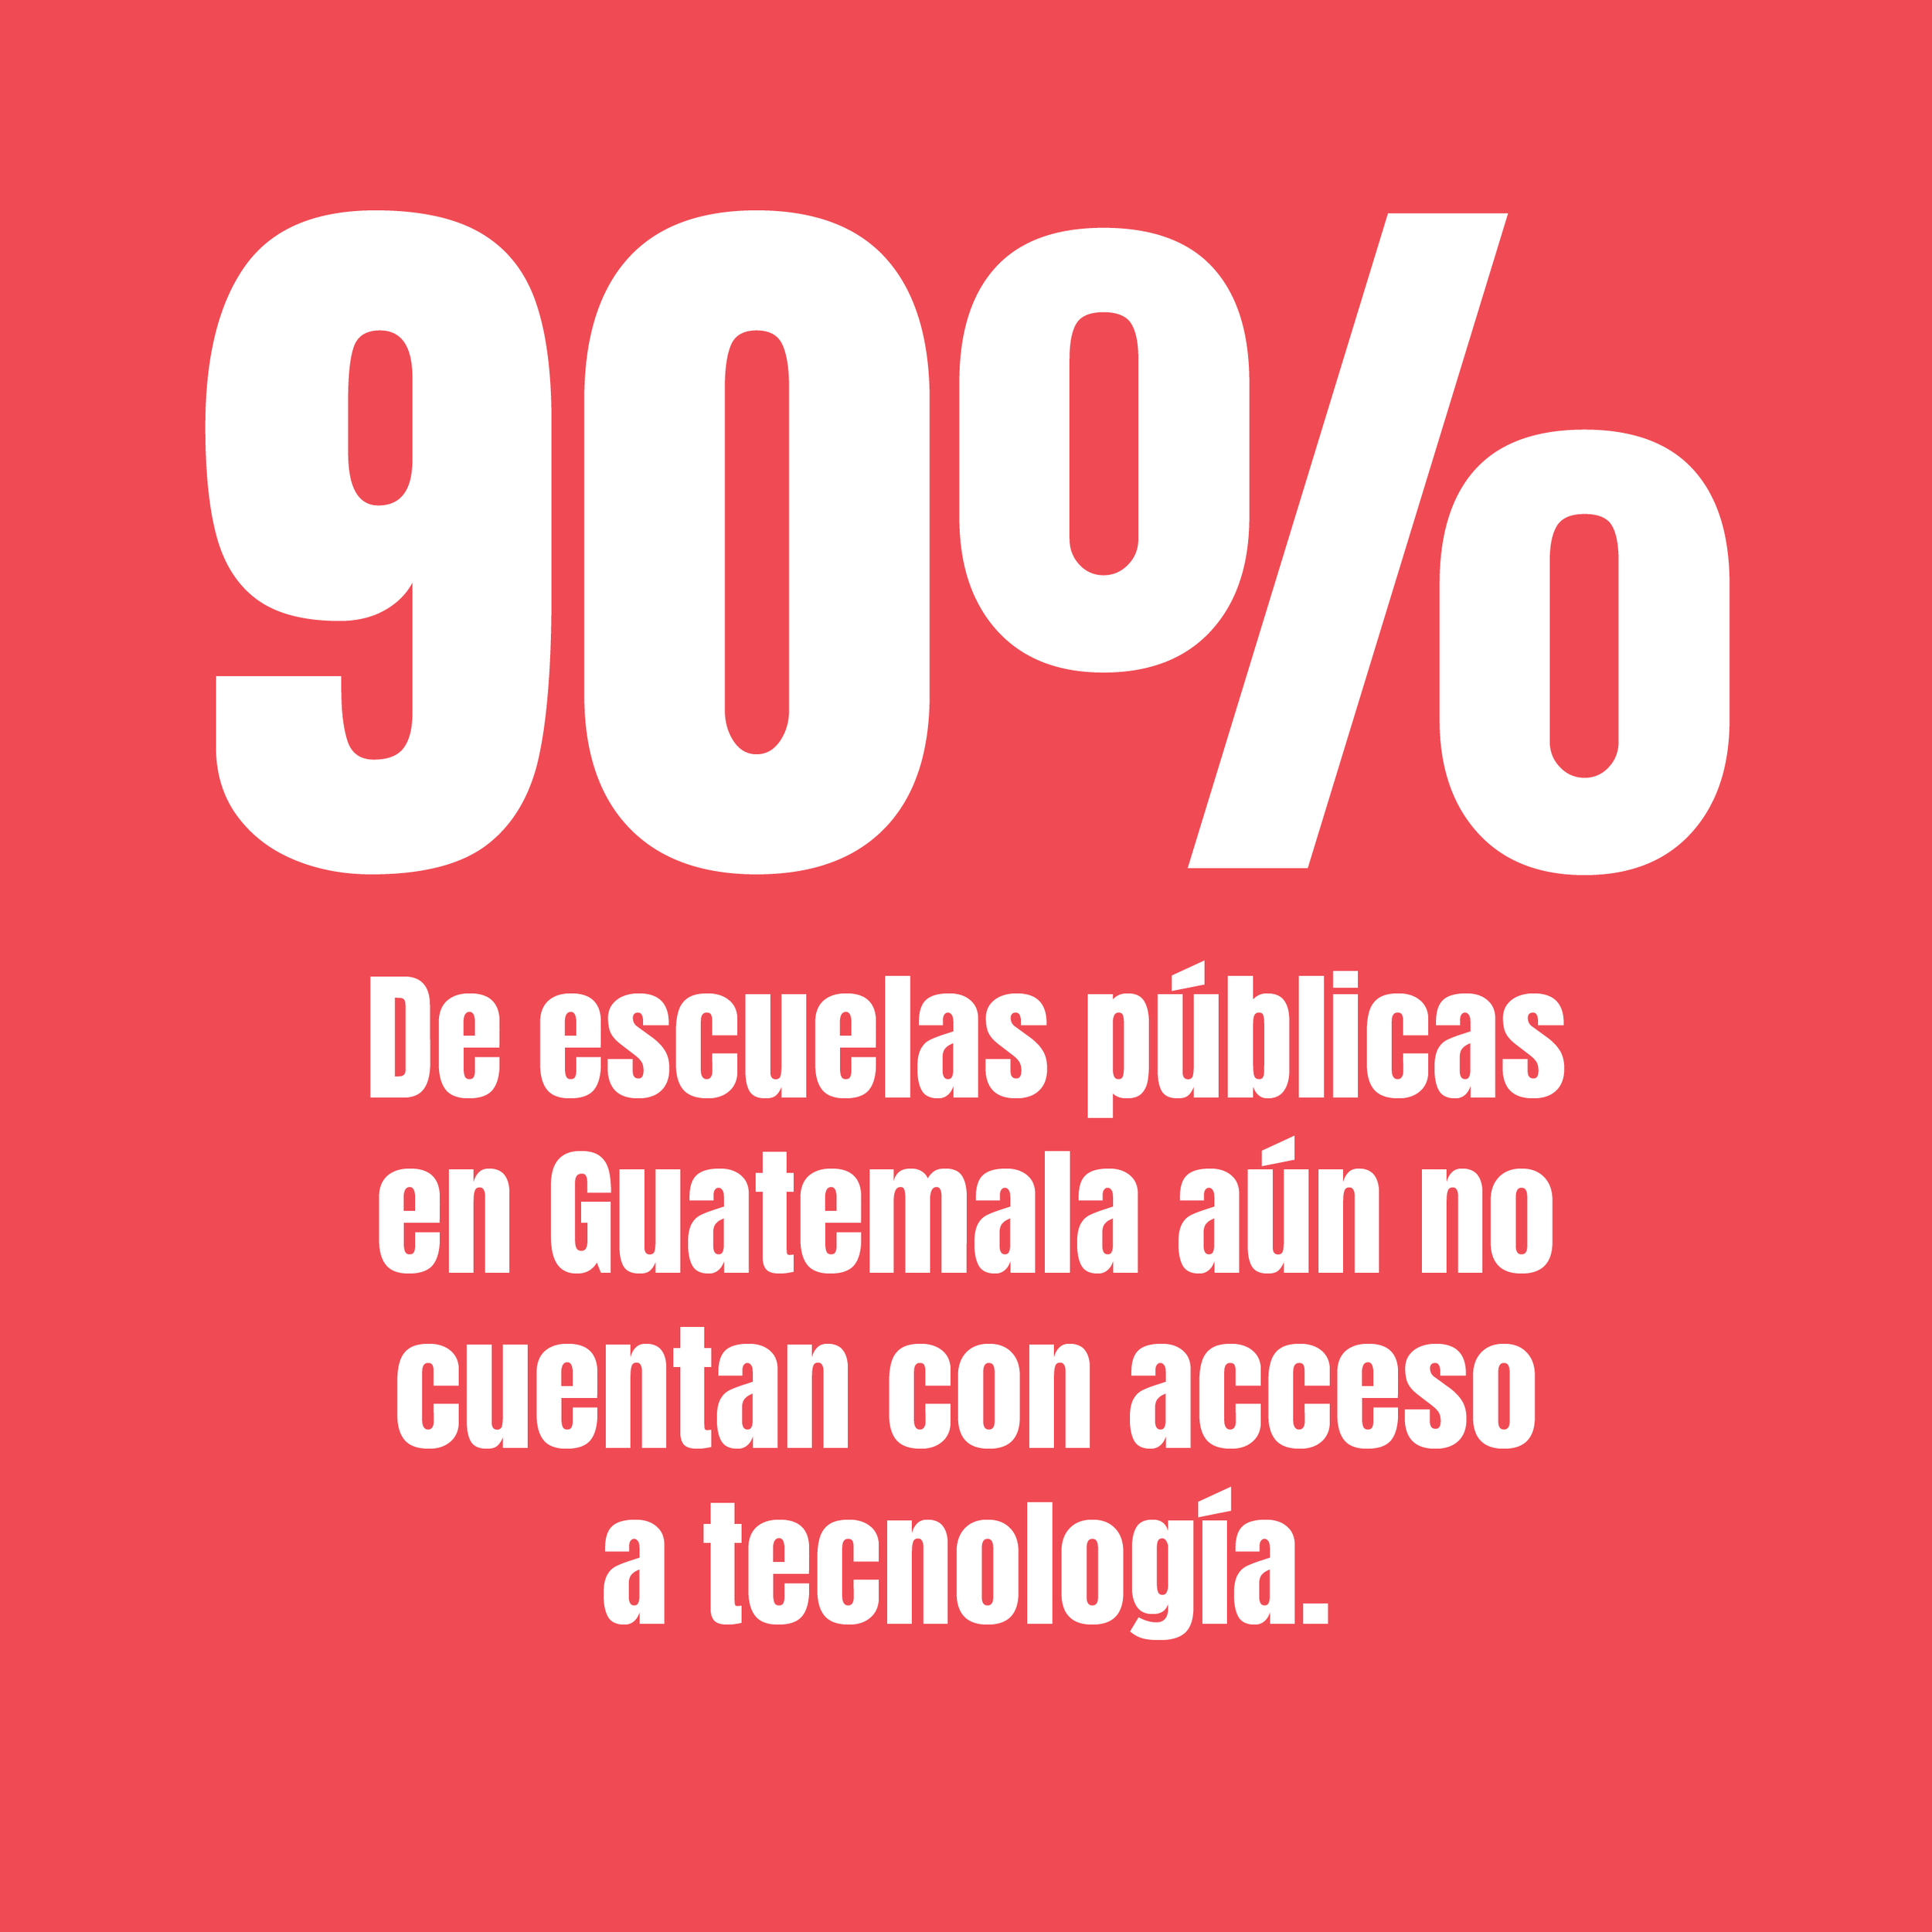  Hoy en Guatemala, hay más de 18,000 escuelas primarias públicas, de las cuales aproximadamente un 90% no tienen acceso a la tecnología. 